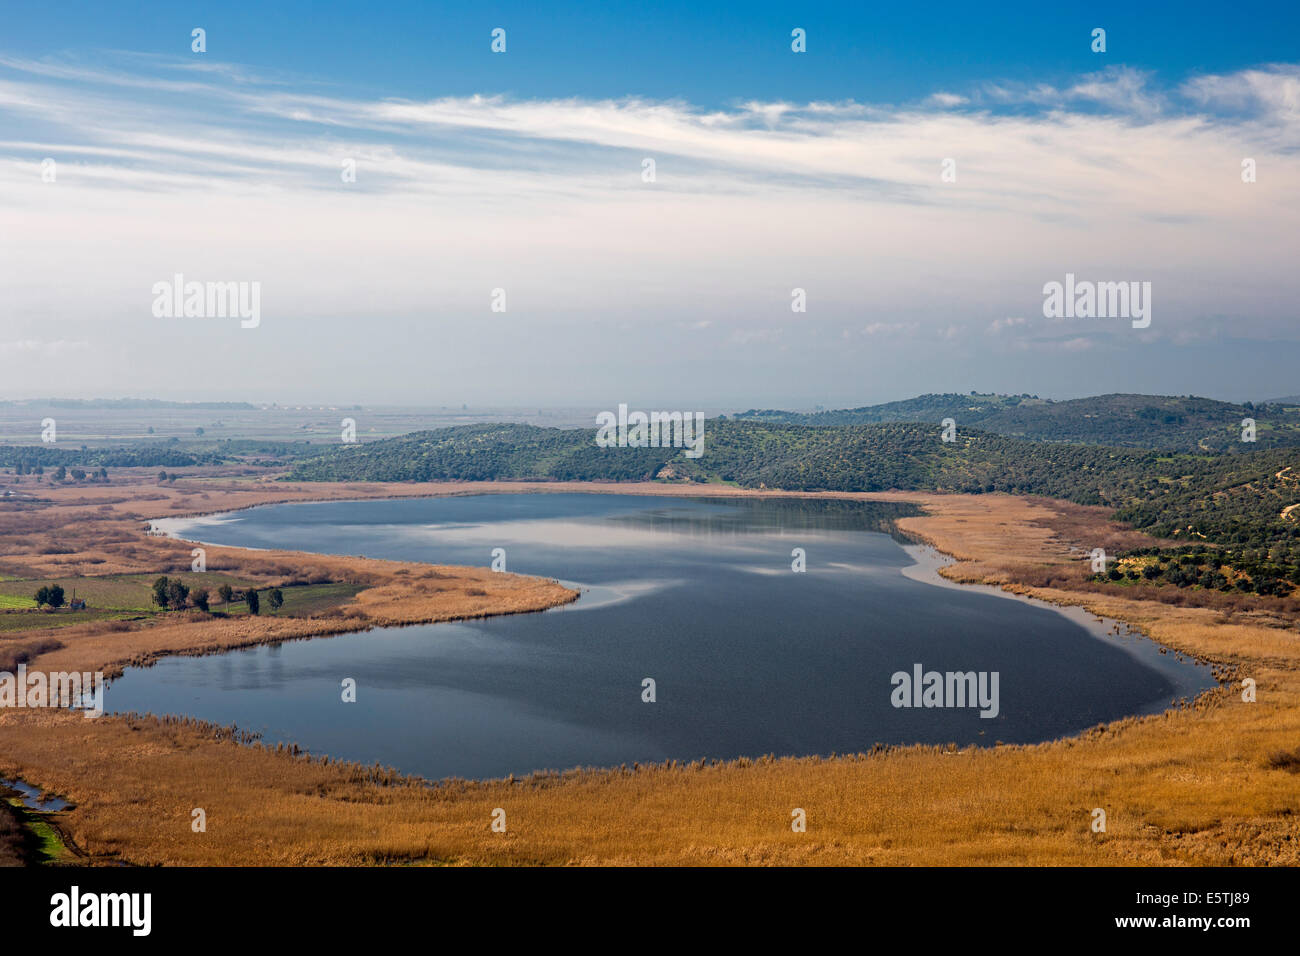 Vista panorámica del lago Barutçu Selçuk Turquía Foto de stock